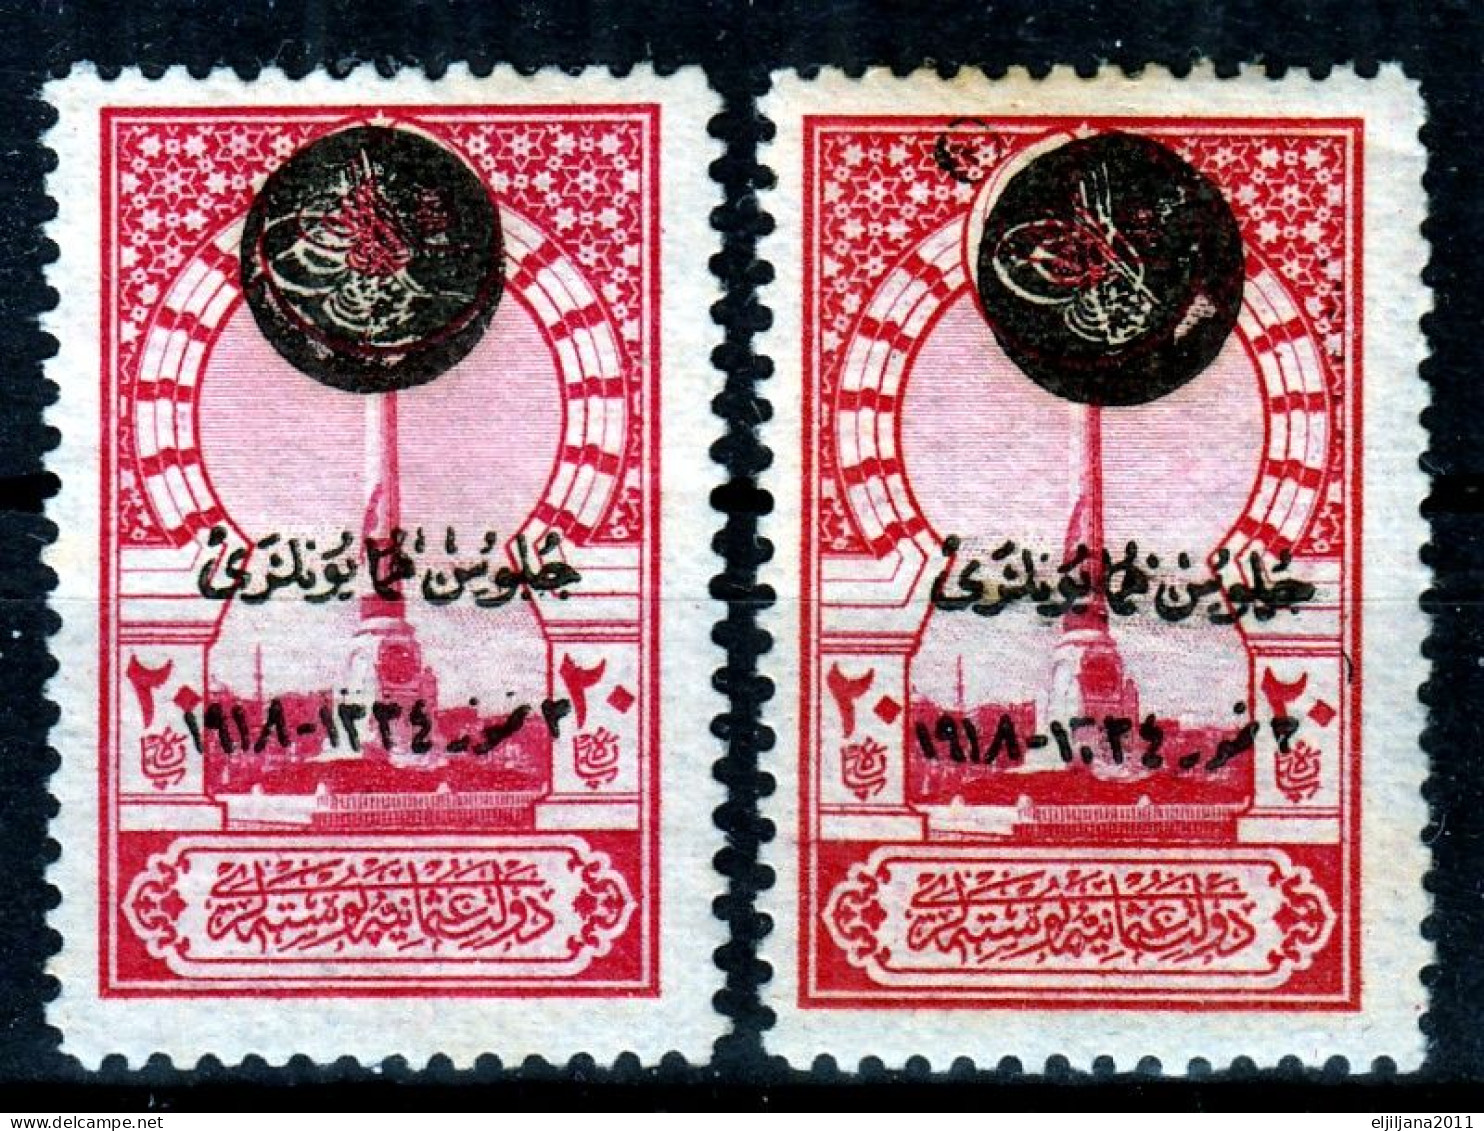 Turkey / Türkei 1919 ⁕ Overprint Stamps Mi.662 ⁕ 4v MH & No Gum - Scan - Neufs